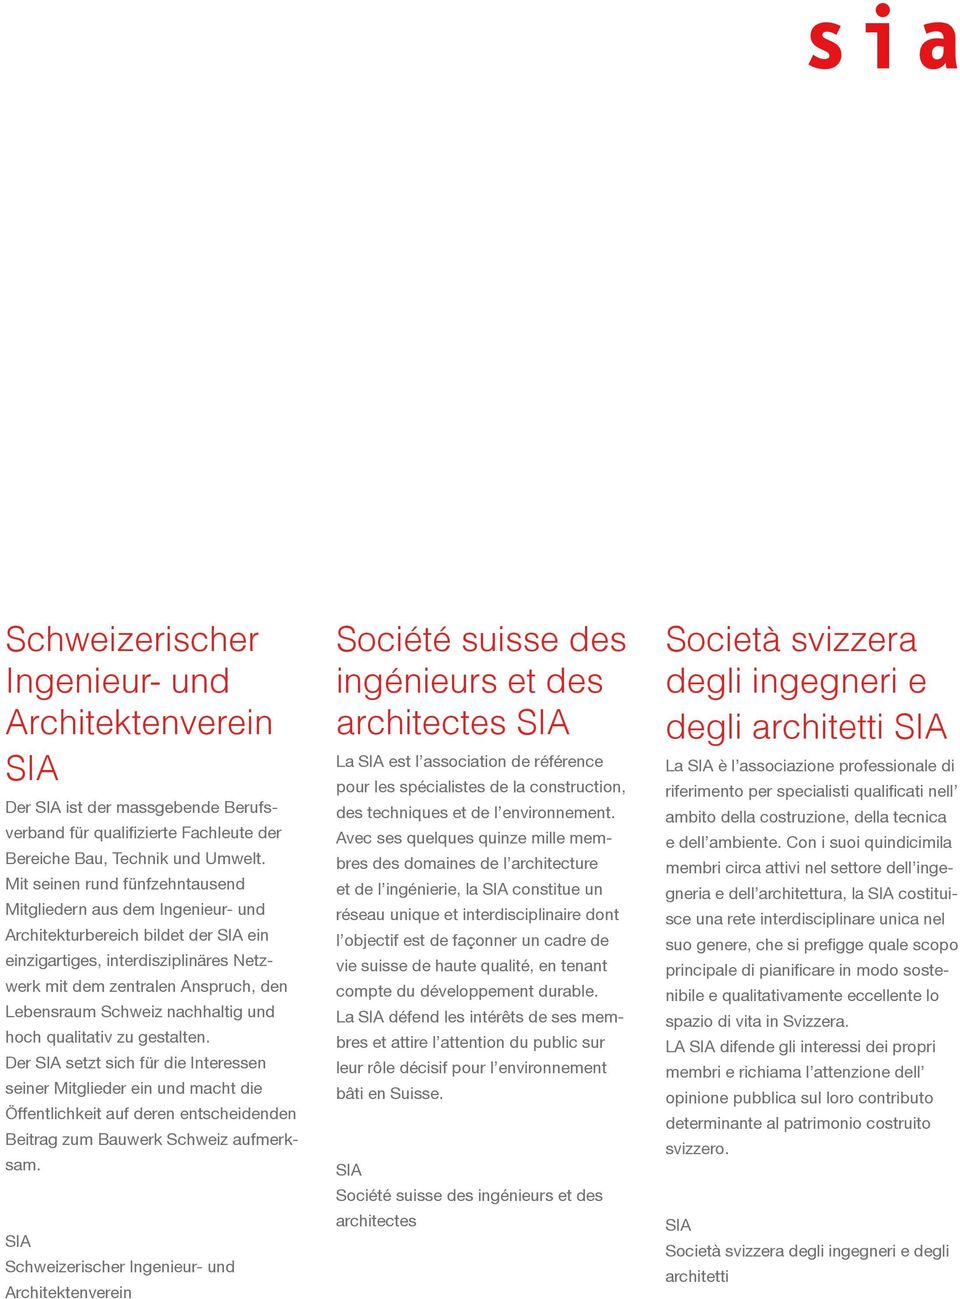 nachhaltig und hoch qualitativ zu gestalten. Der SIA setzt sich für die Interessen seiner Mitglieder ein und macht die Öffentlichkeit auf deren entscheidenden Beitrag zum Bauwerk Schweiz aufmerksam.